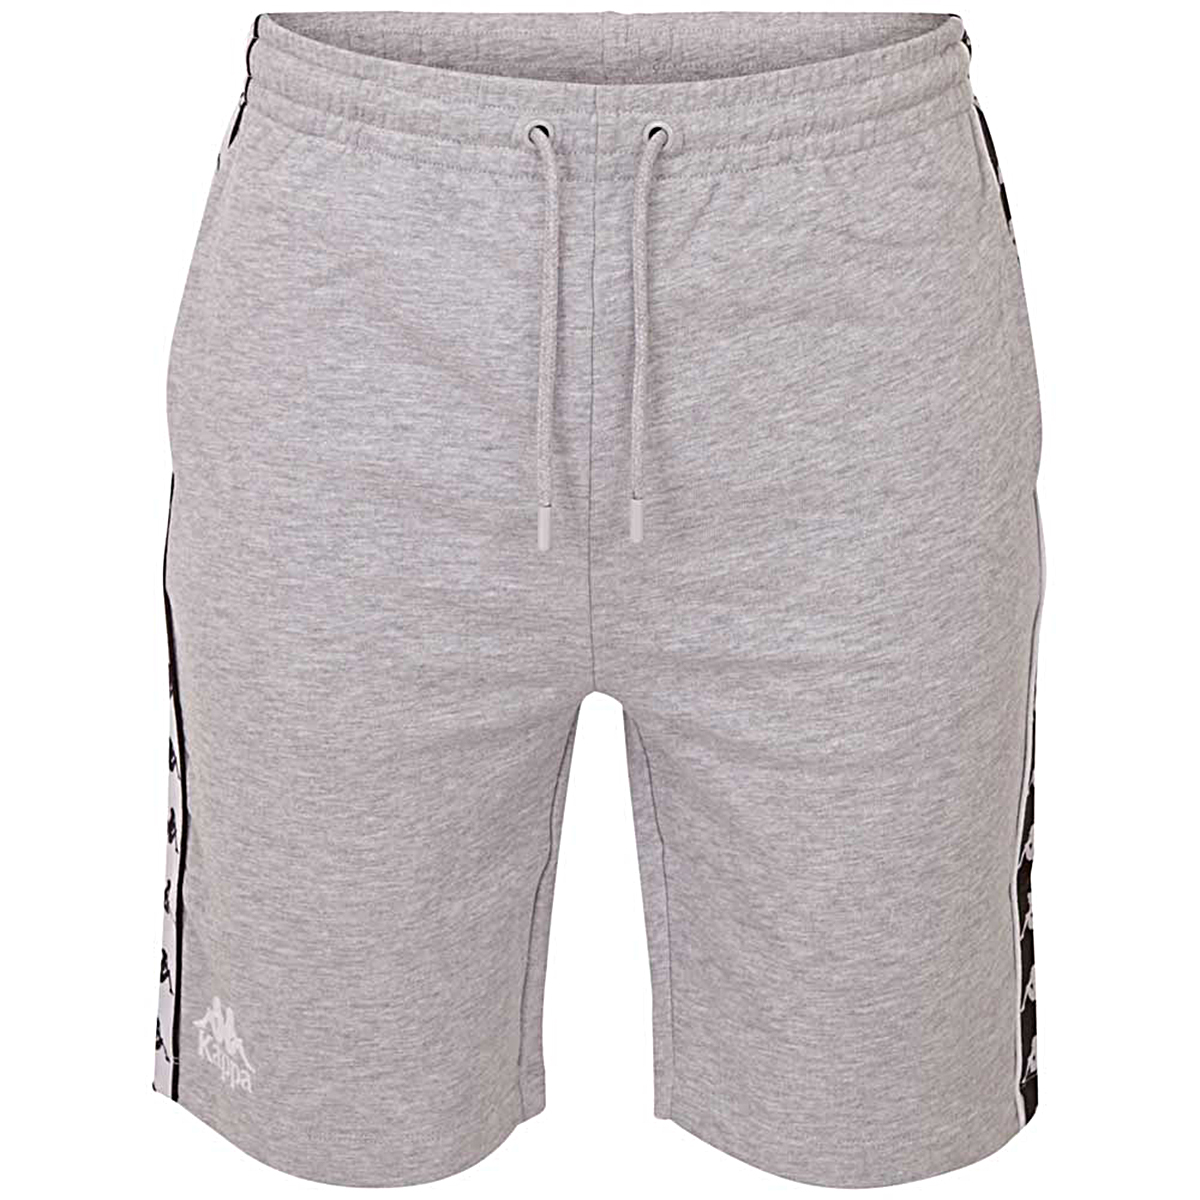 Тканевые брюки Kappa Jogging 305006, серый